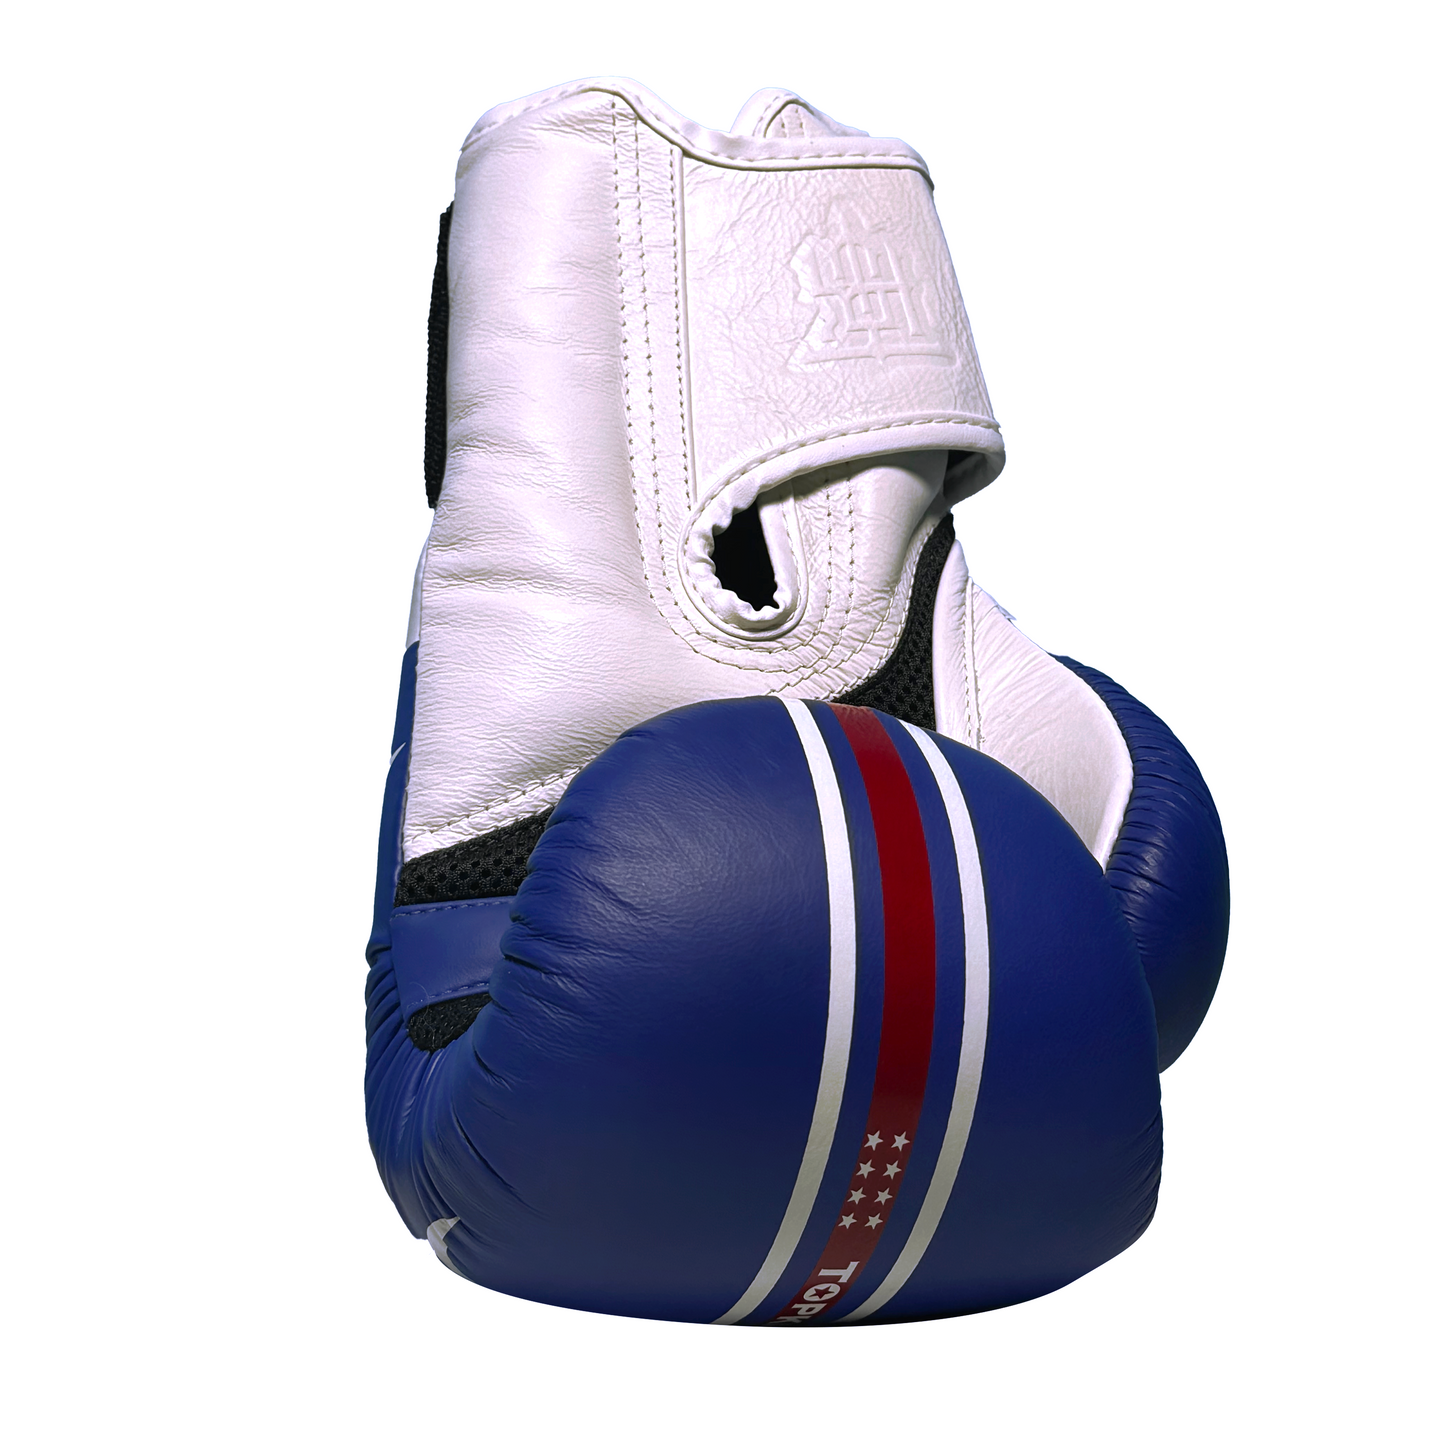 Top King Boxhandschuhe "World Serie" weiss/blau